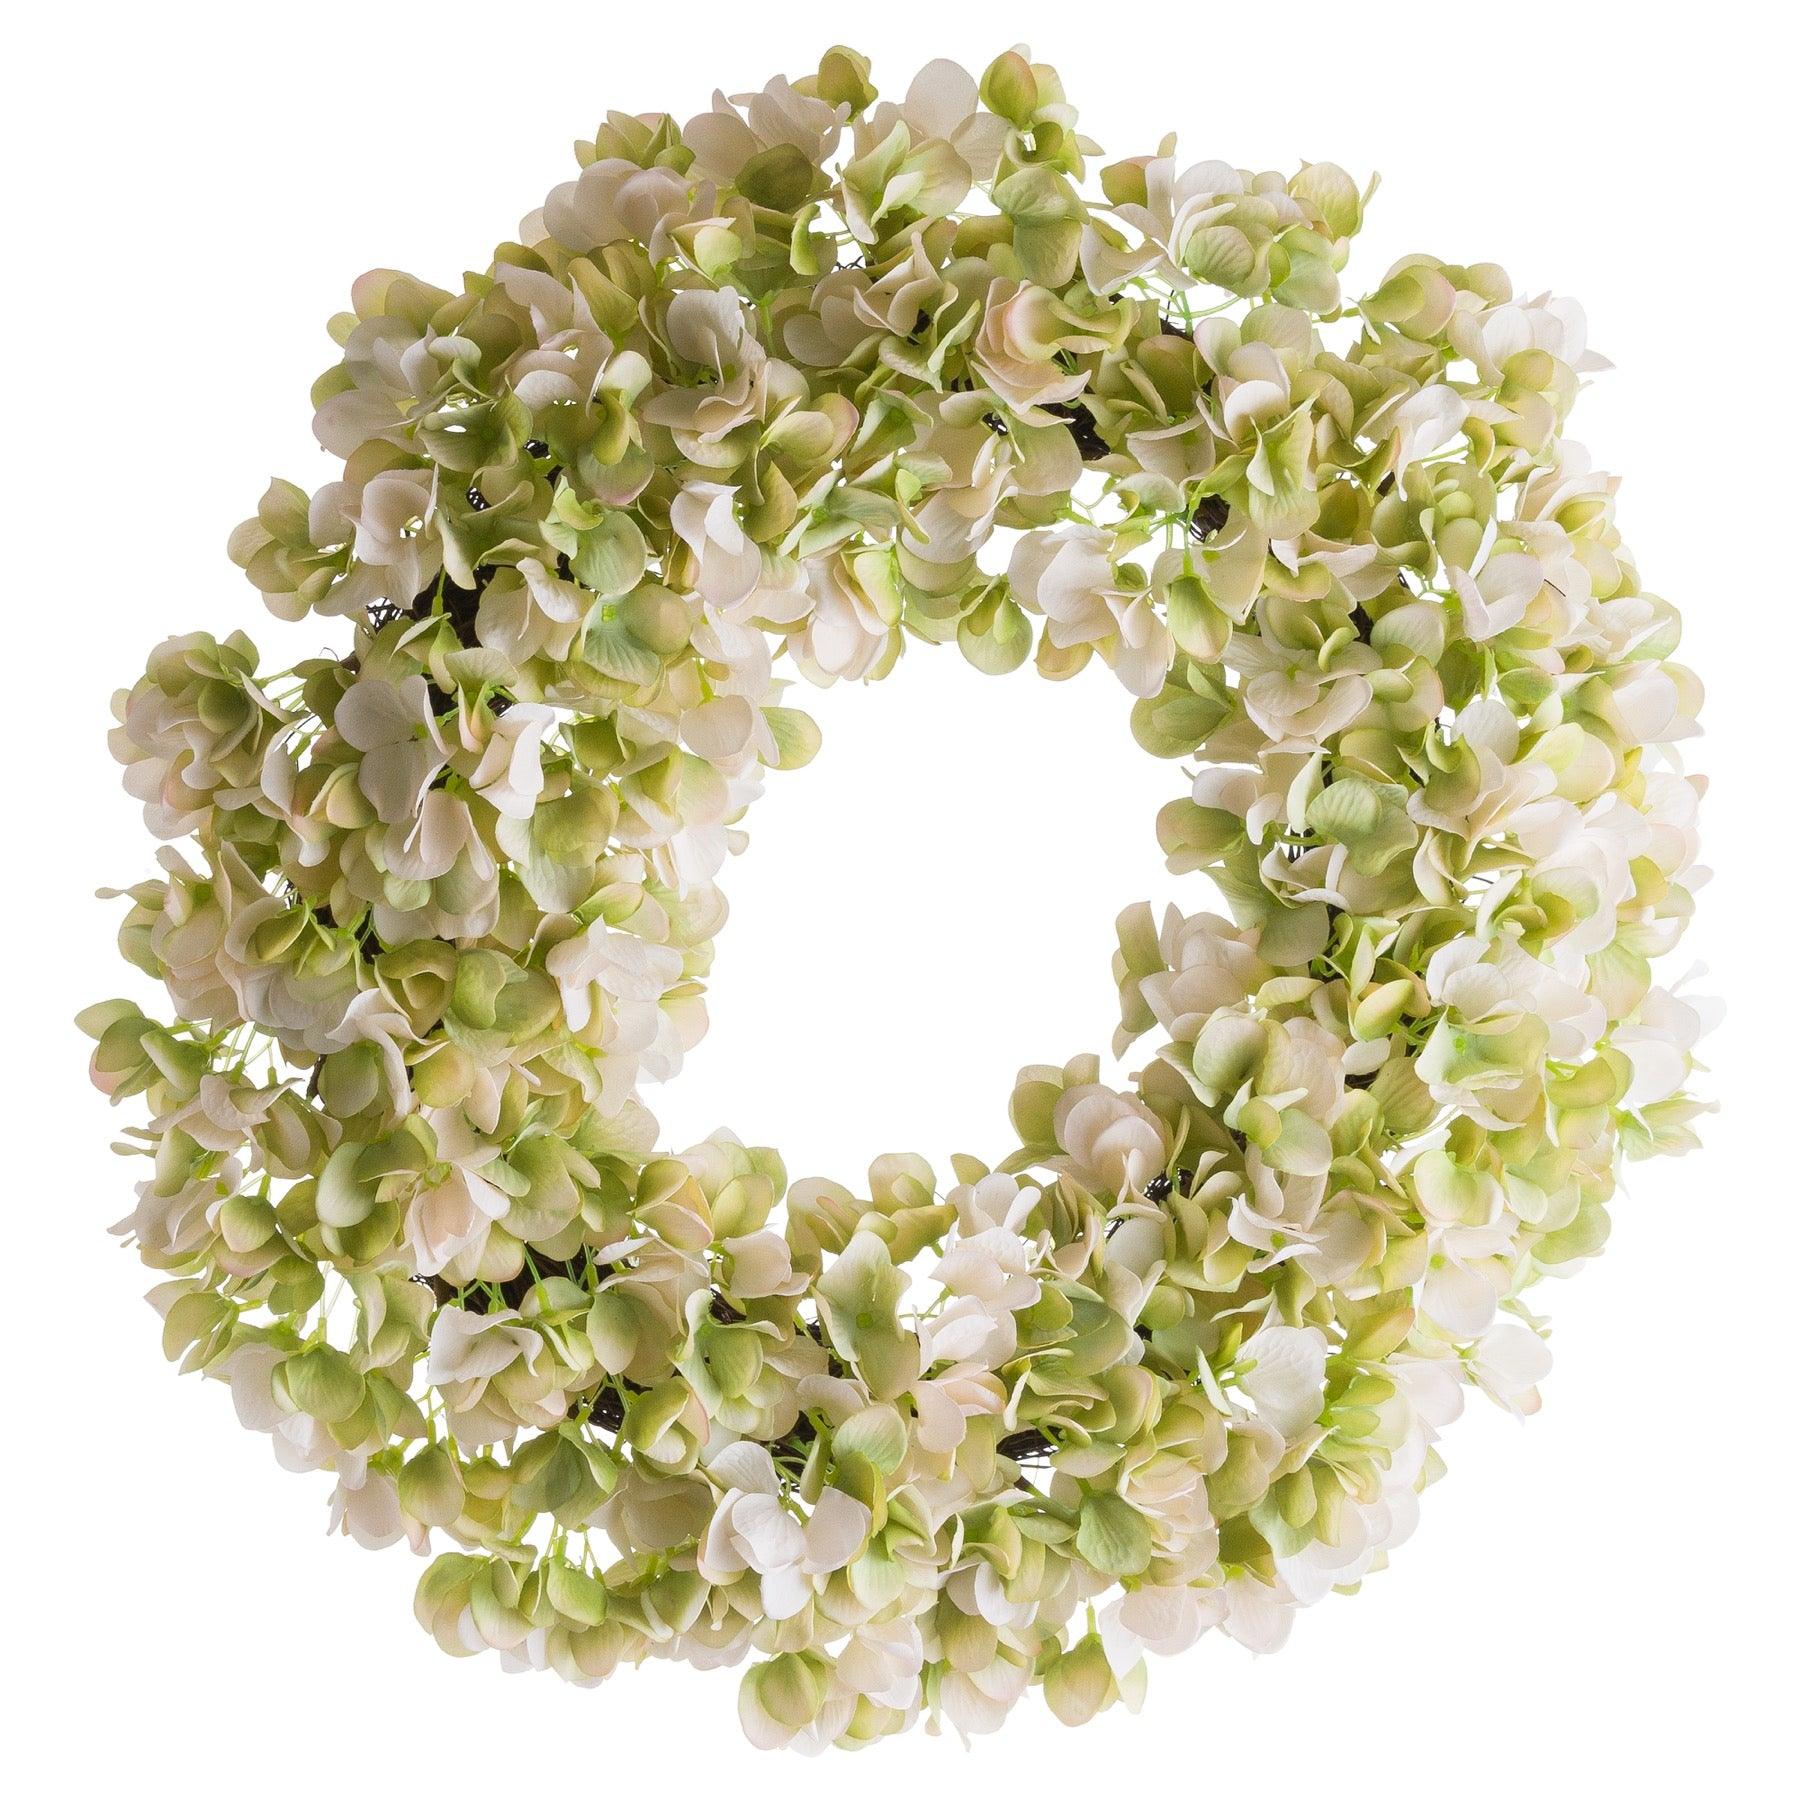 View White Hydrangea Wreath information